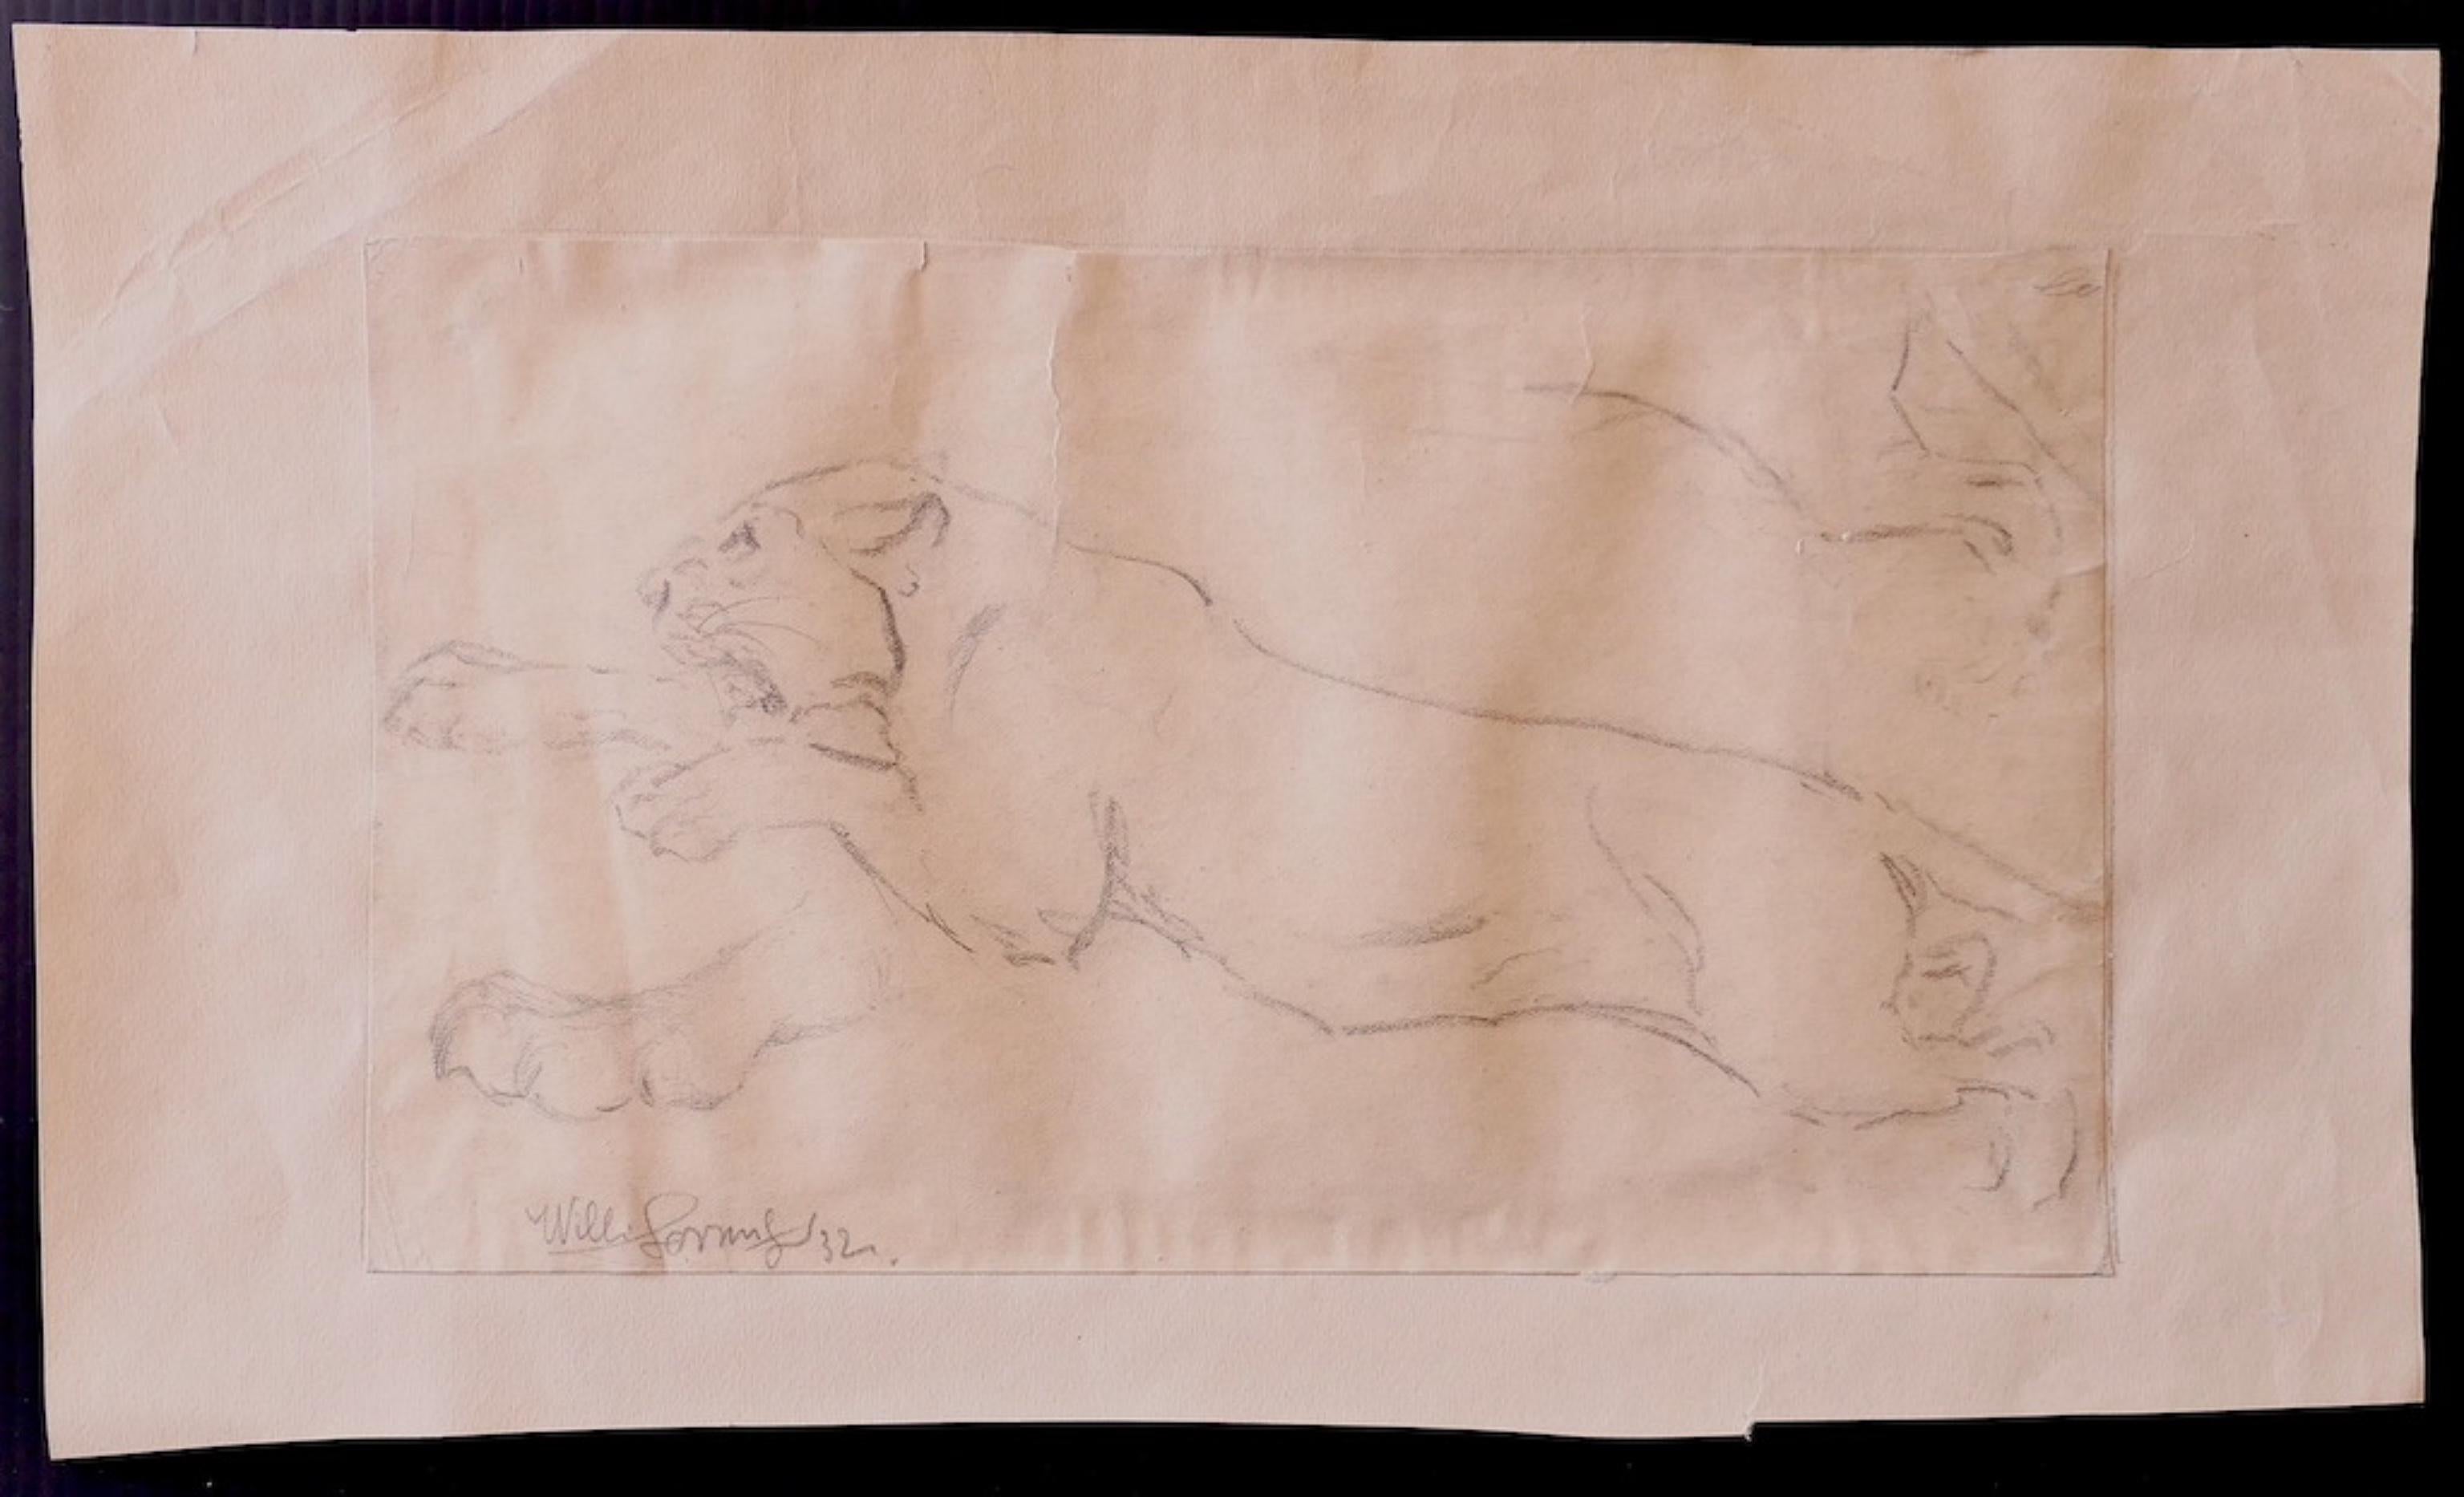 Studie eines Löwen ist eine schöne Originalzeichnung auf elfenbeinfarbenem Papier aus dem Jahr 1932 des deutschen Künstlers Wilhelm Lorenz, auch bekannt als Willi Lorenz. 

Handsigniert unten links auf der Zeichnung.

Guter Zustand bis auf einen